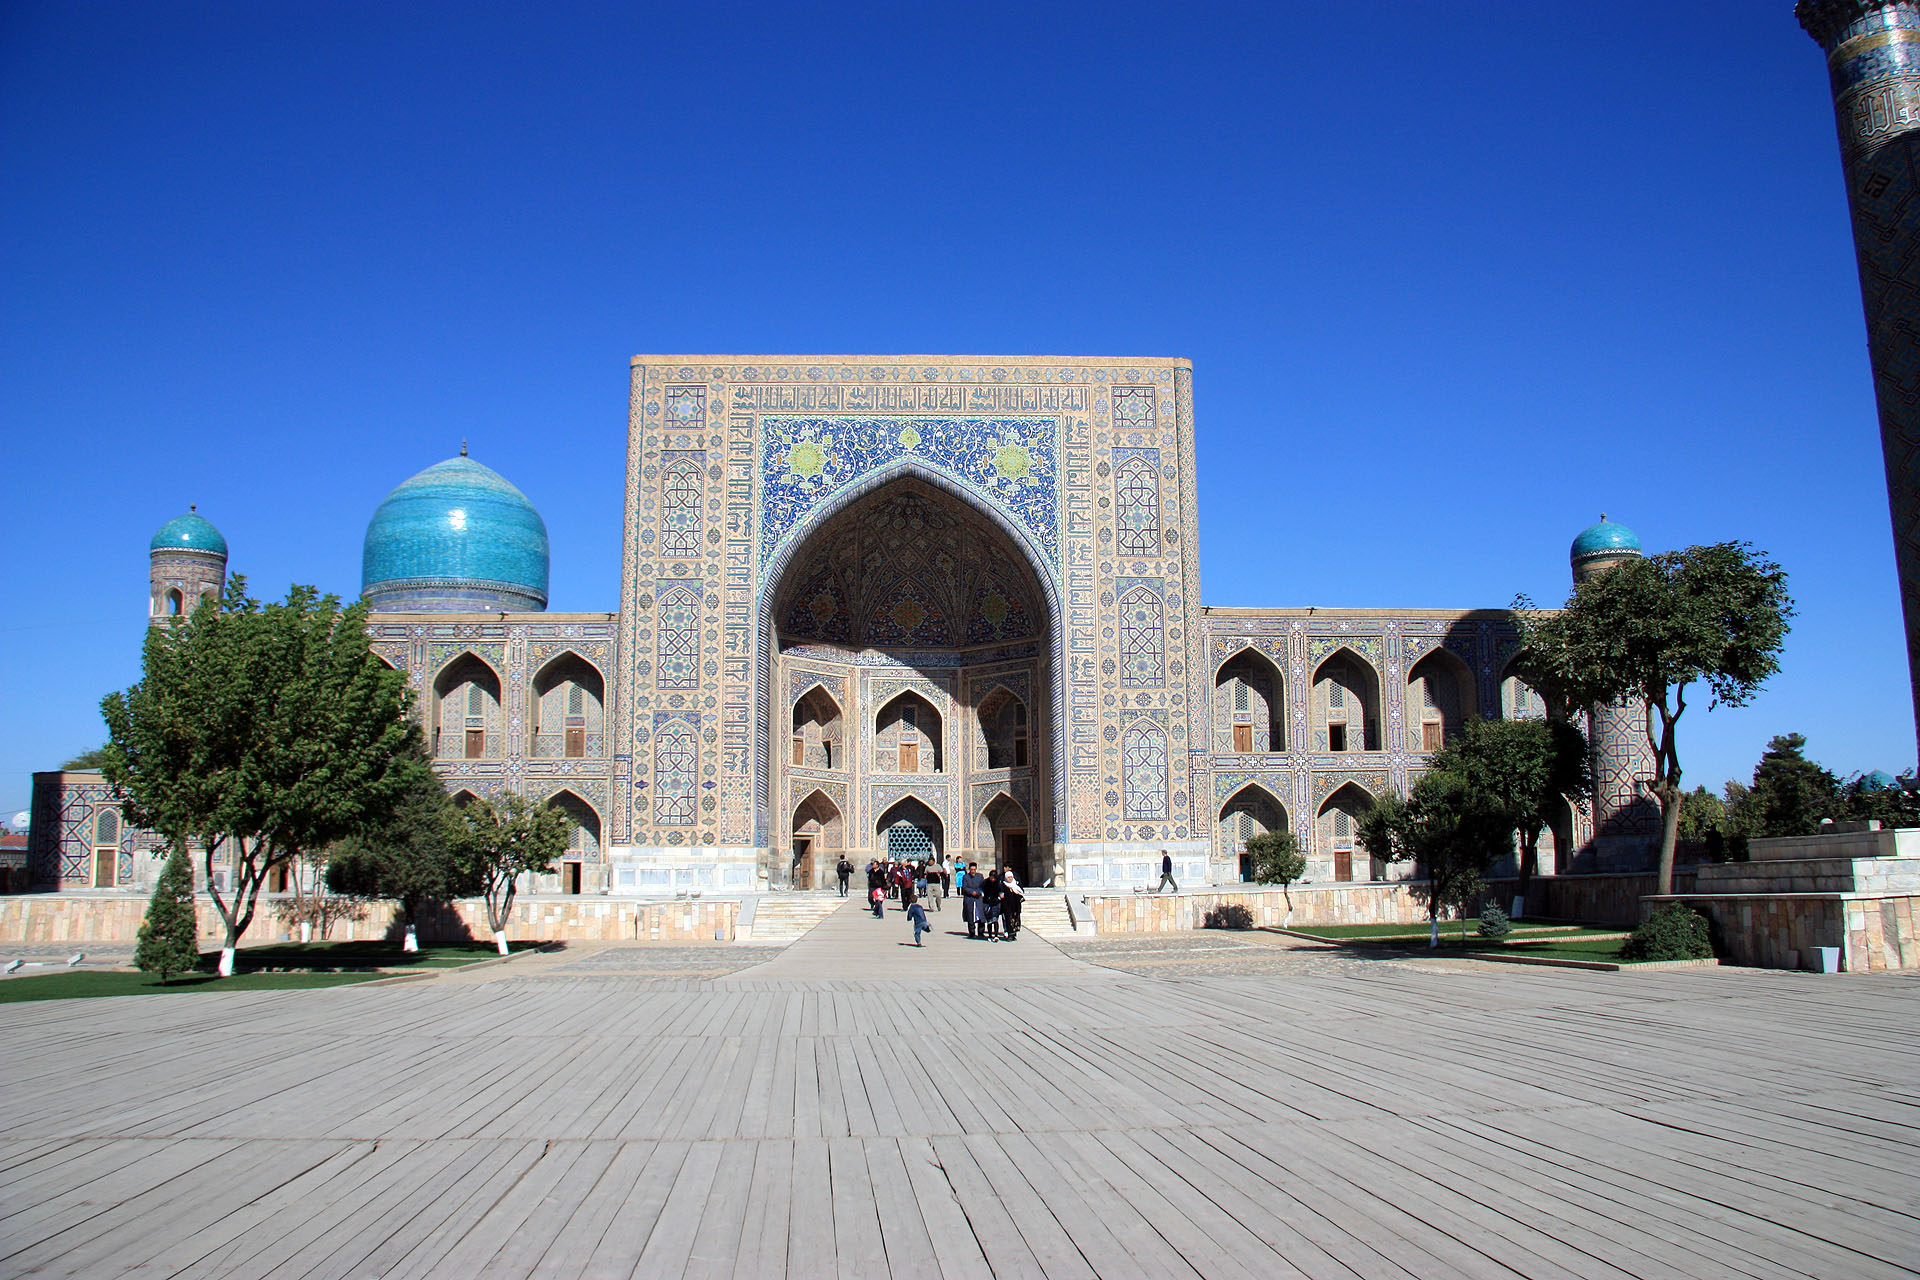 The Registan-east side